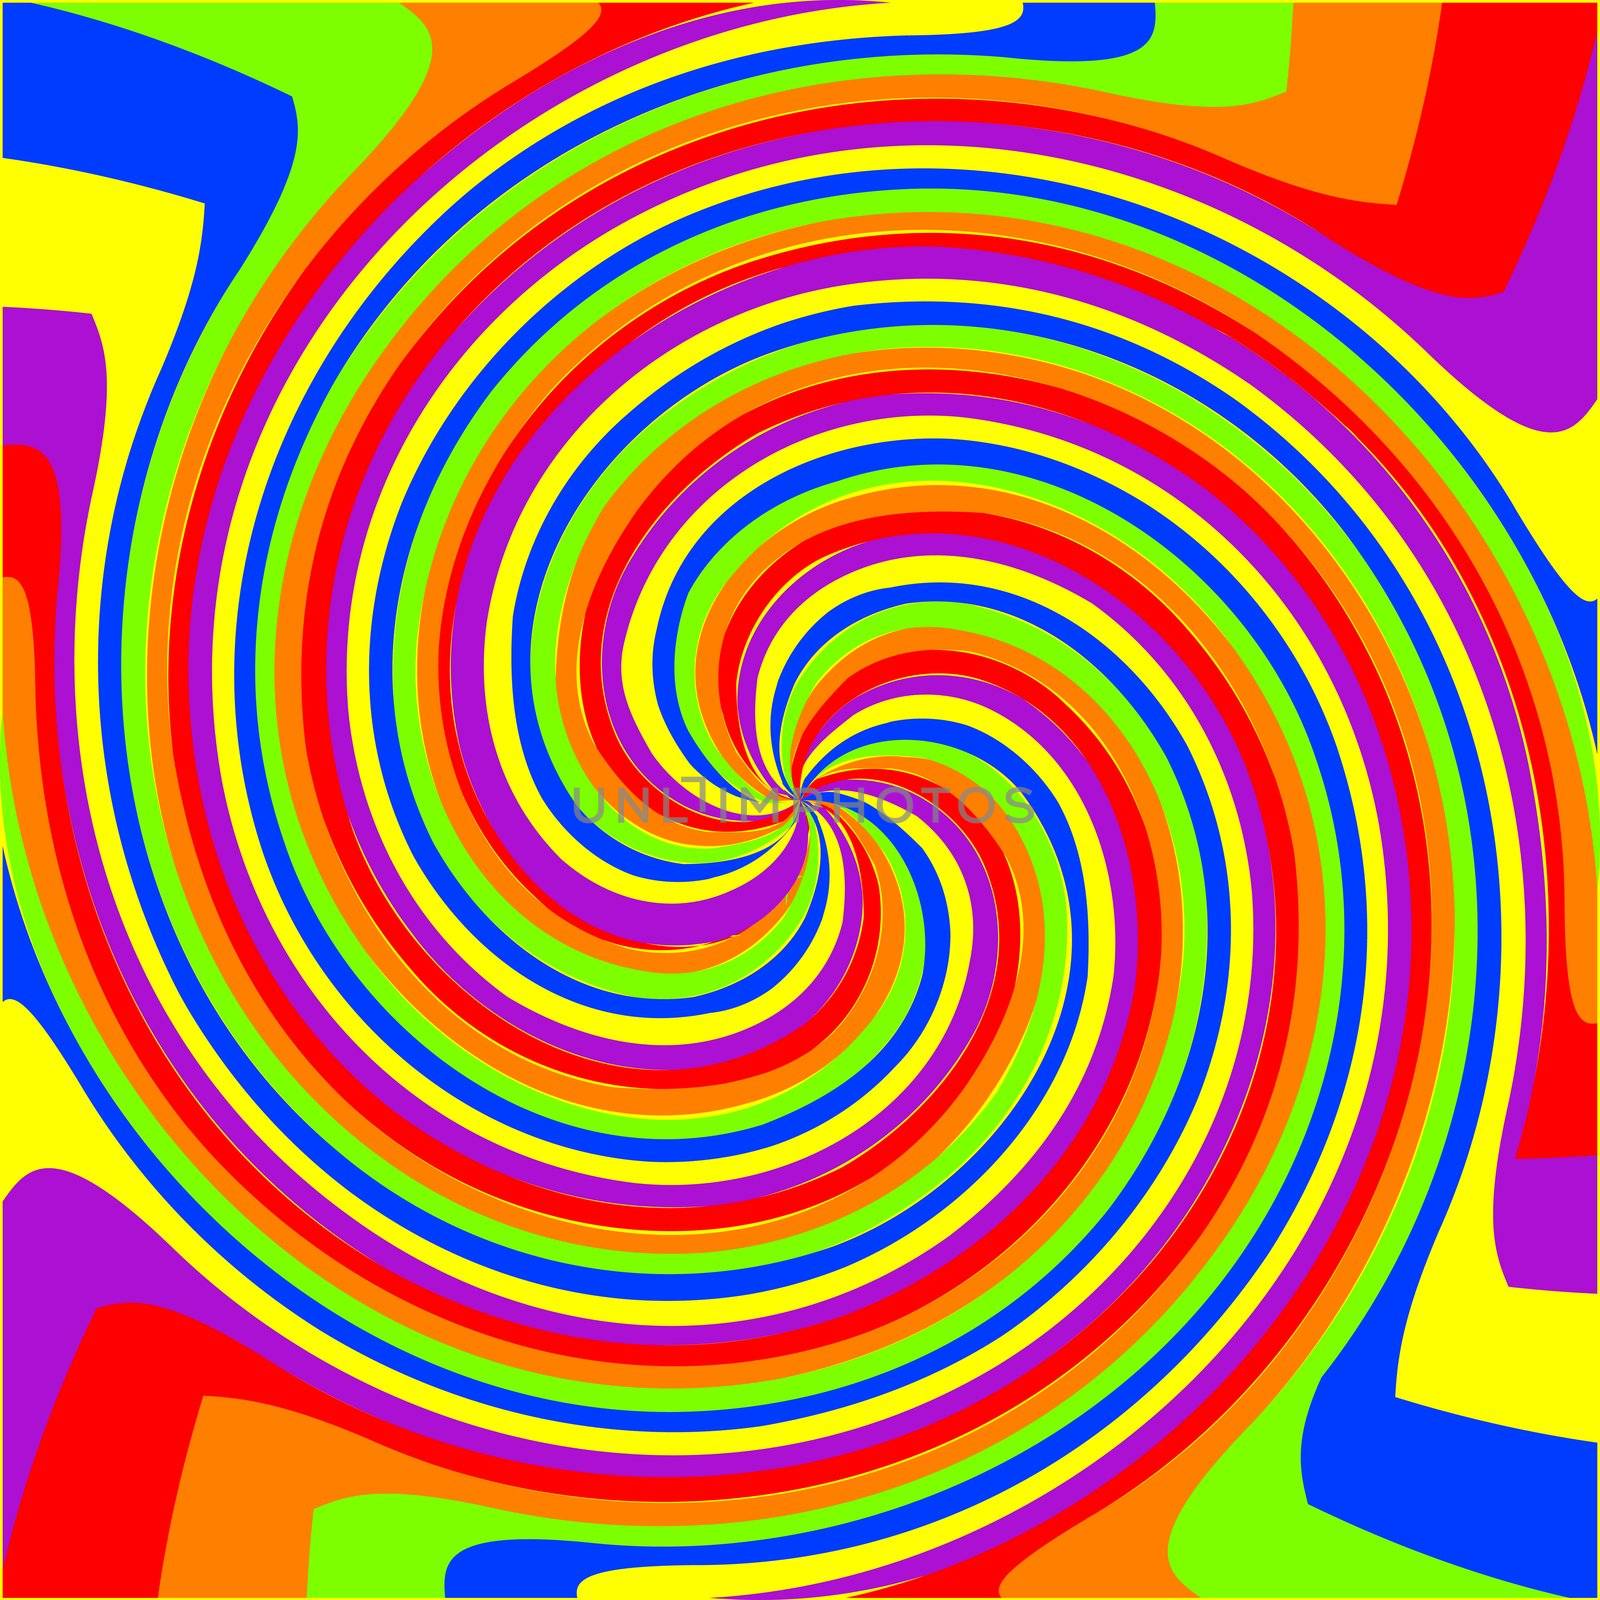 swirl rainbow composition, abstract vector art illustration